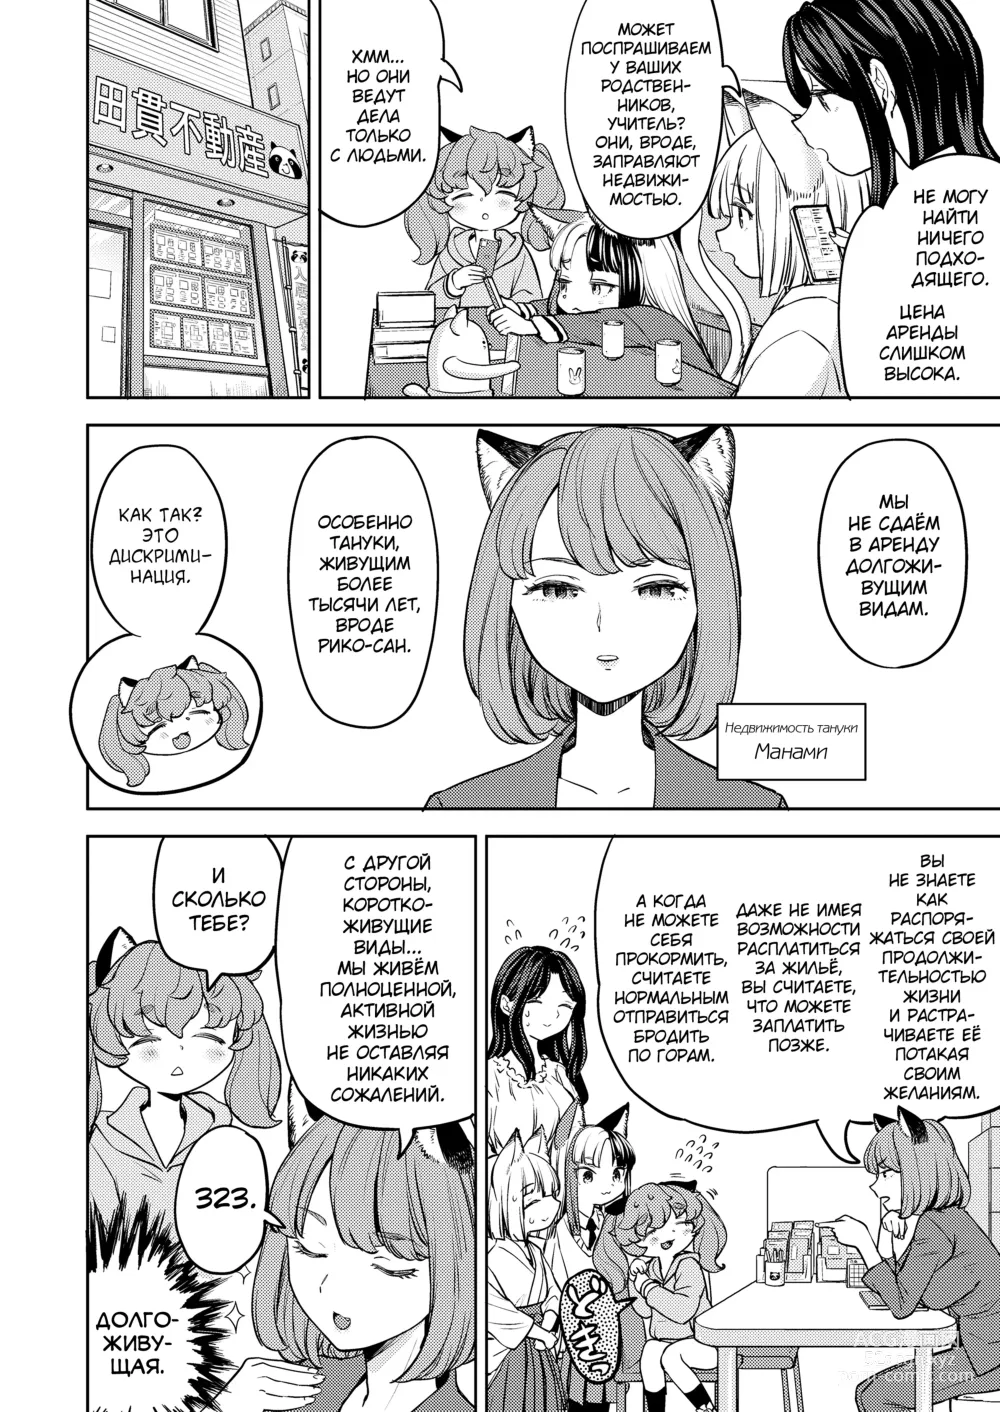 Page 4 of manga Makikomi 6